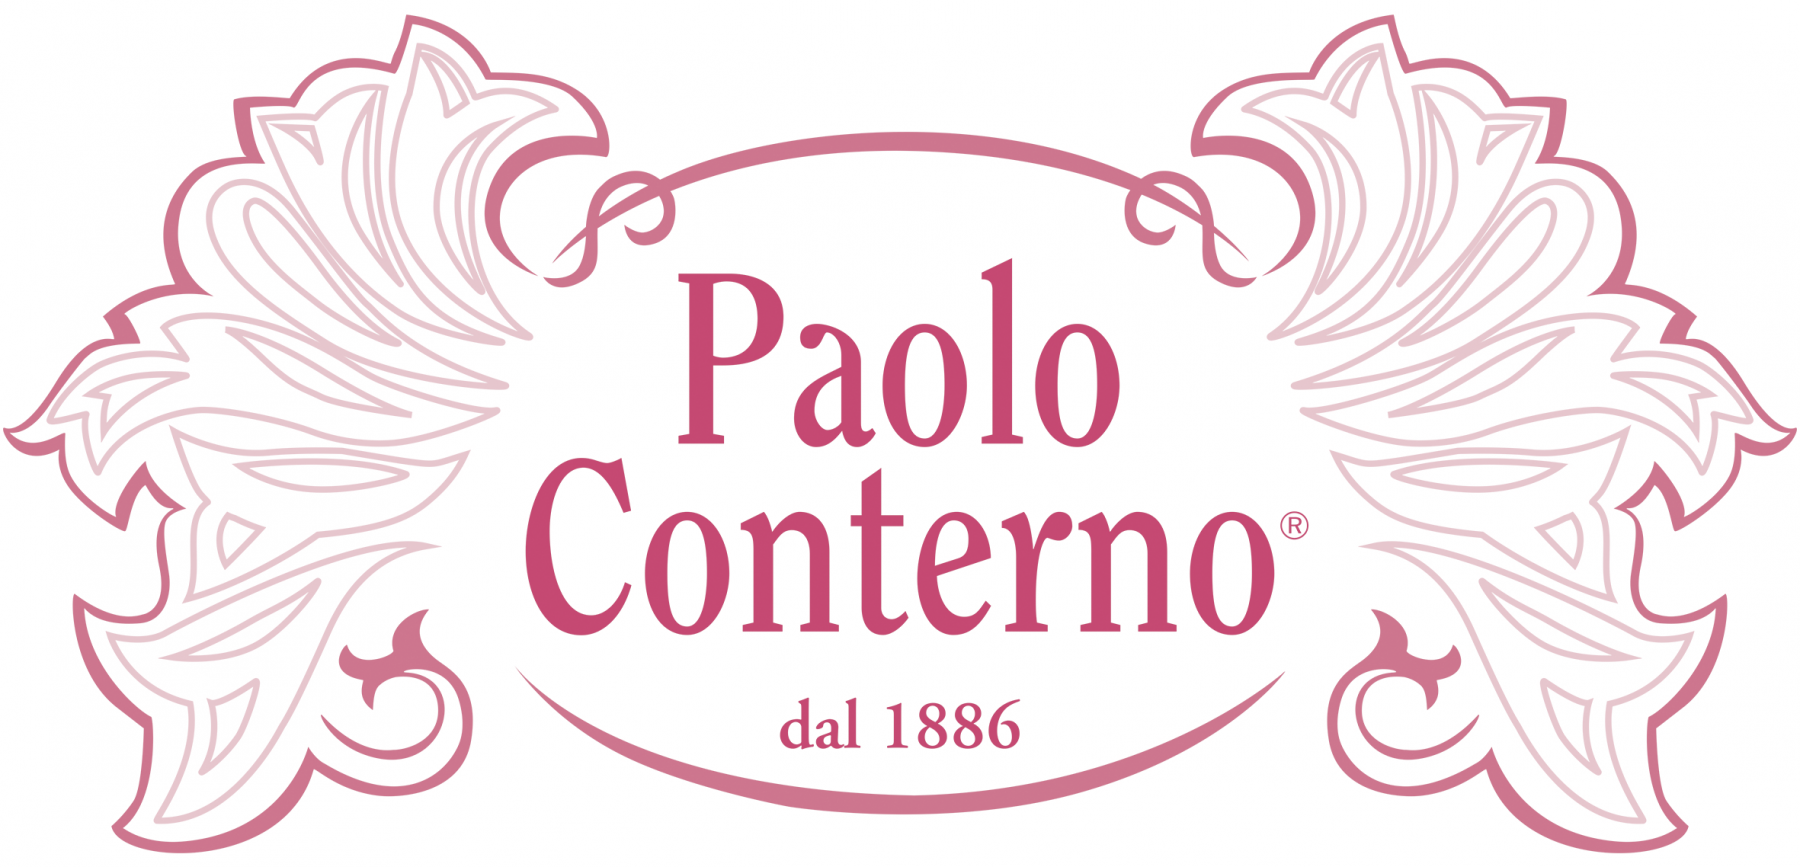 Paolo Conterno - Azienda Vitivinicola